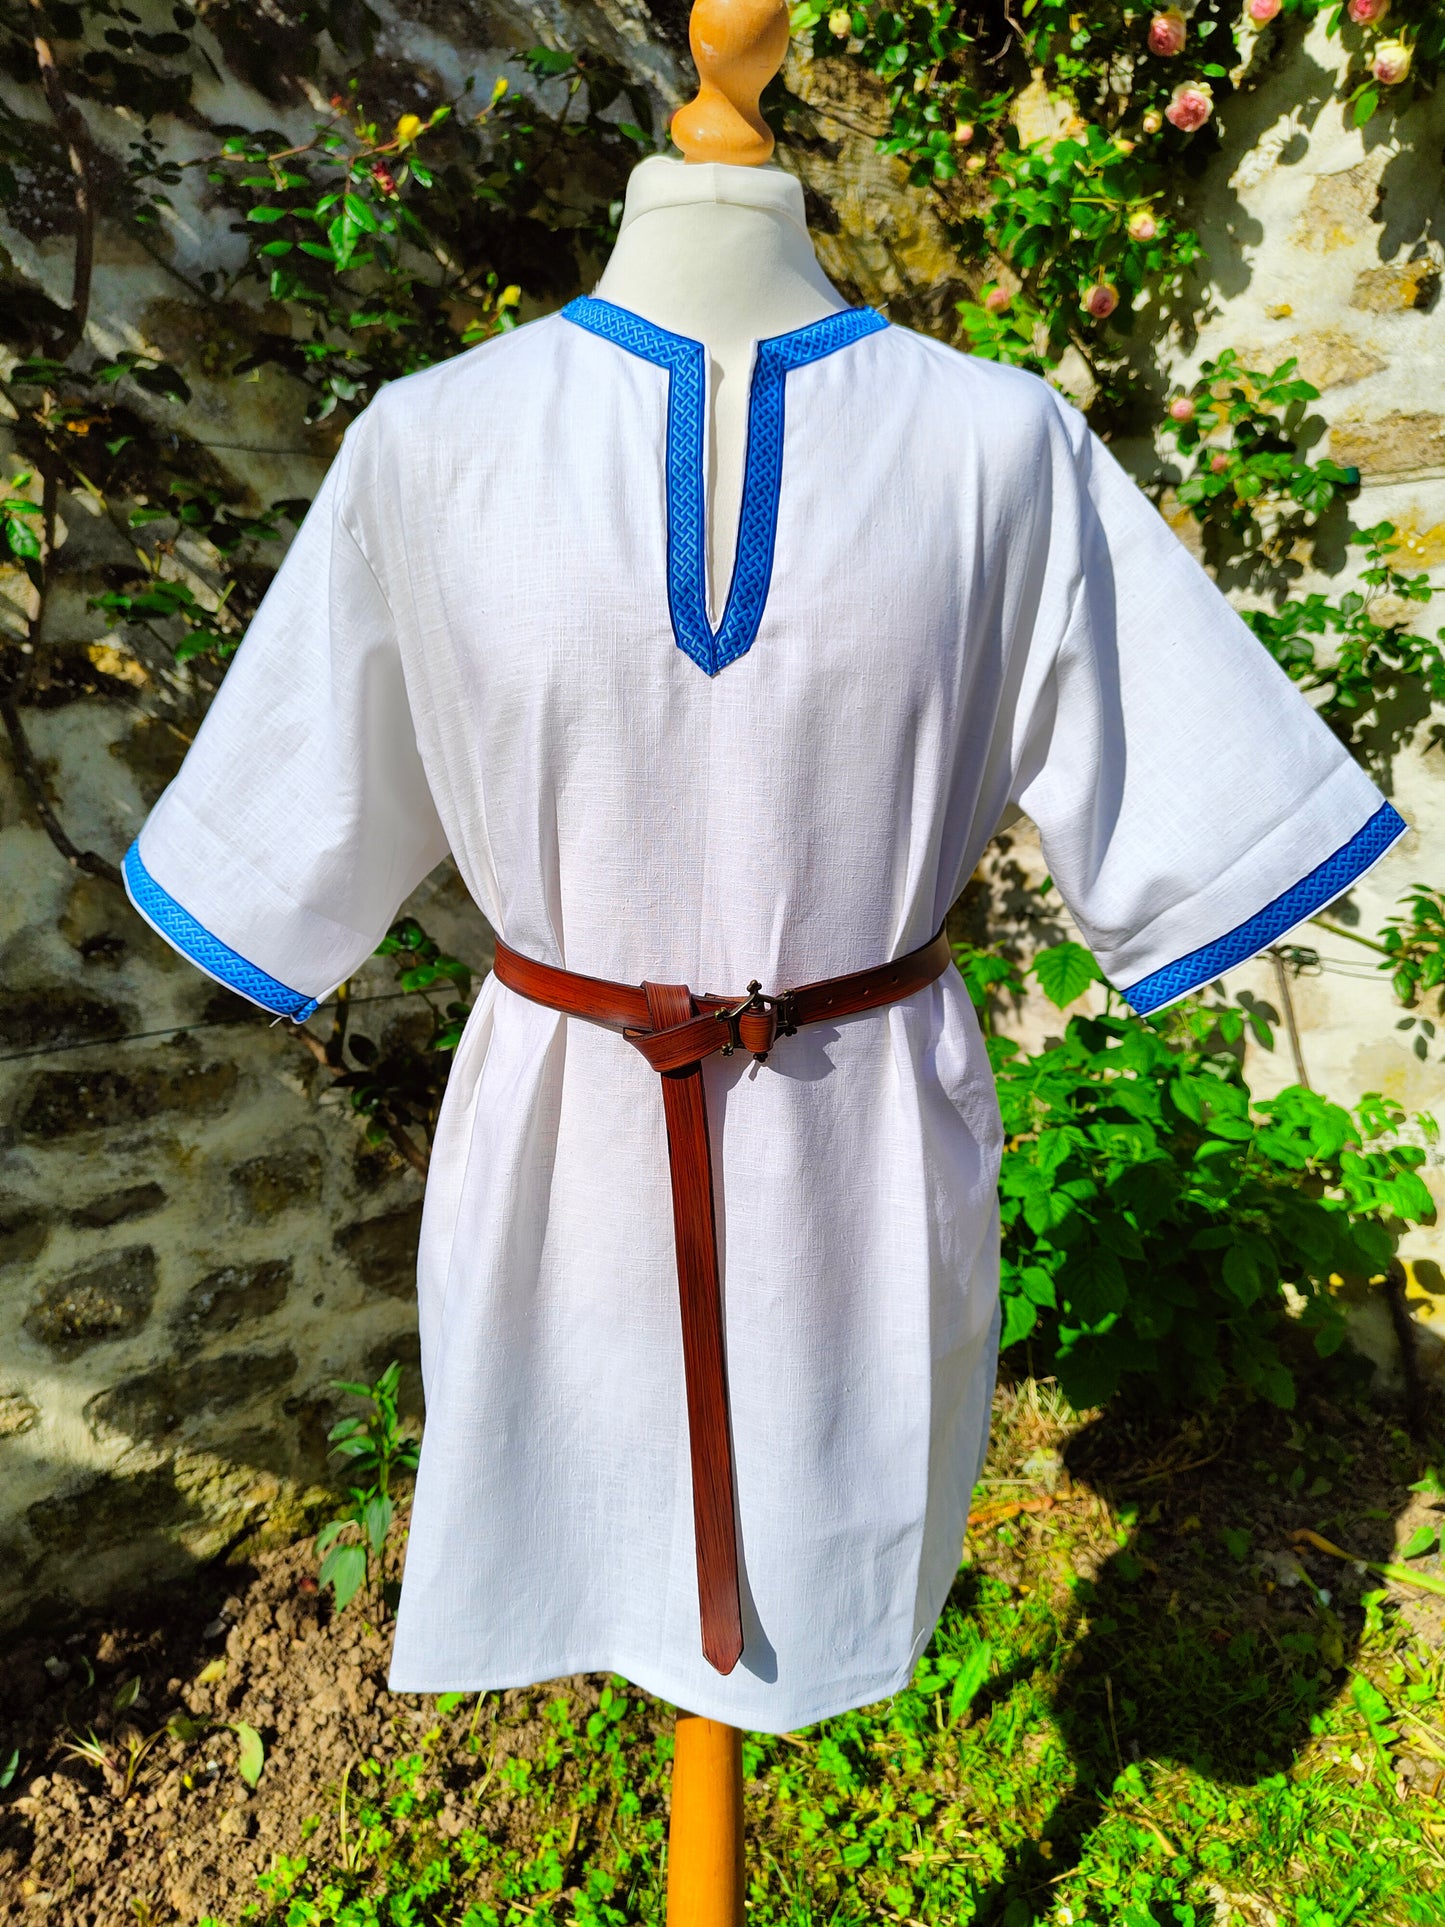 Tunique médiévale ou viking en lin blanc avec joli galon bleu, manches courtes